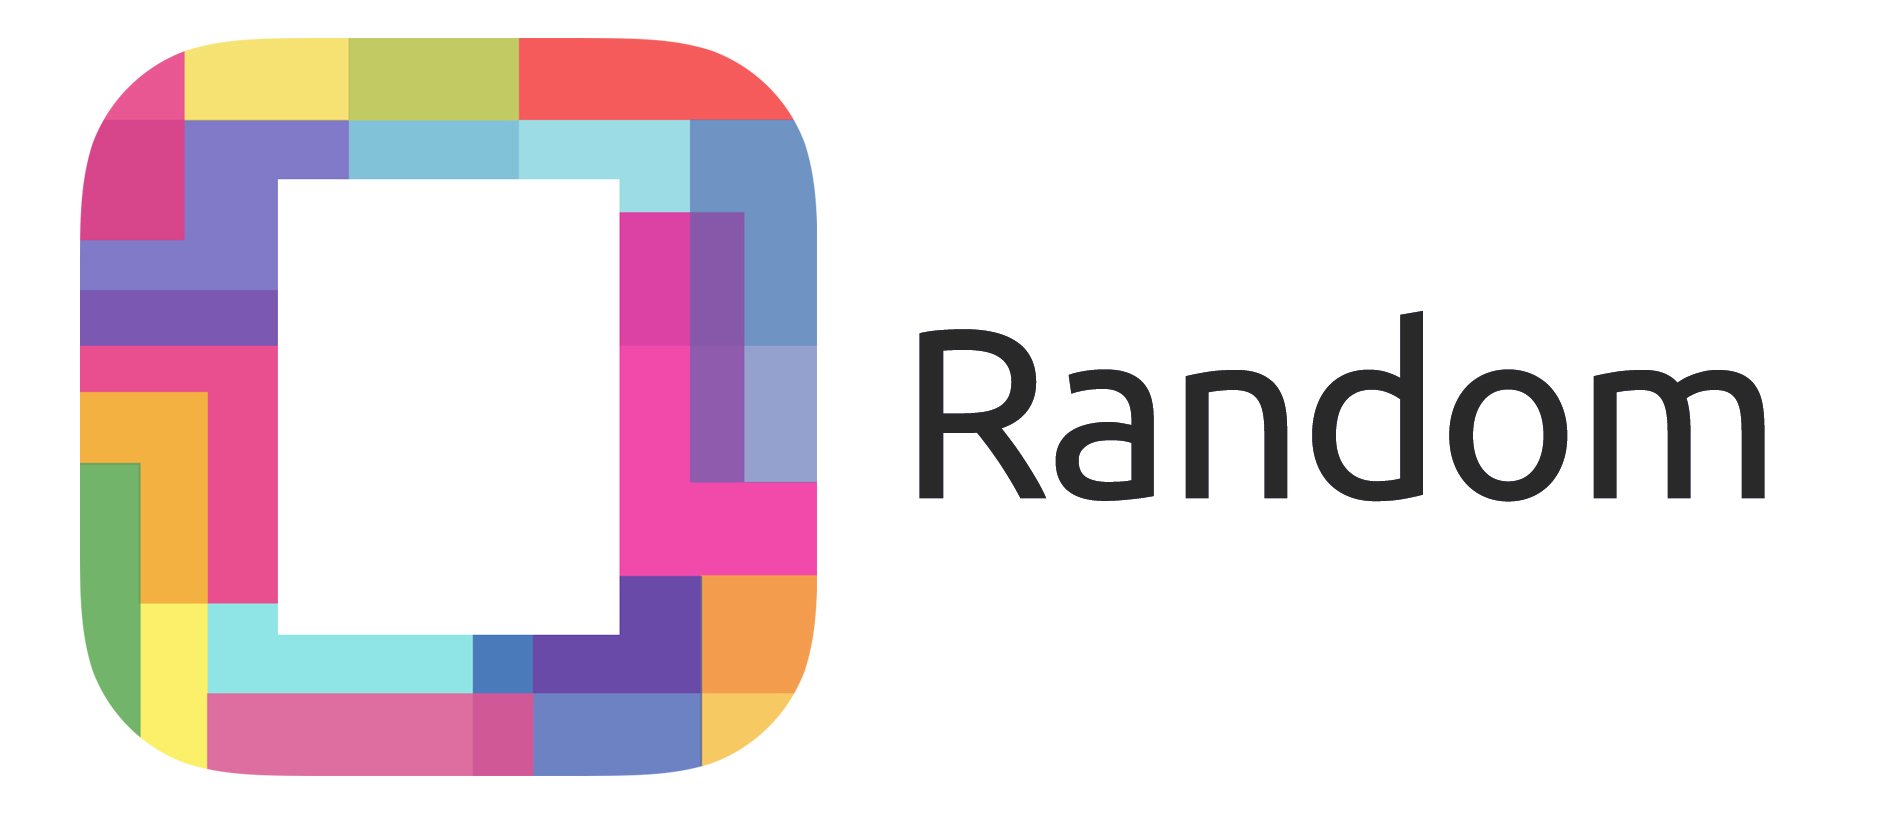 Trademark Logo RANDOM